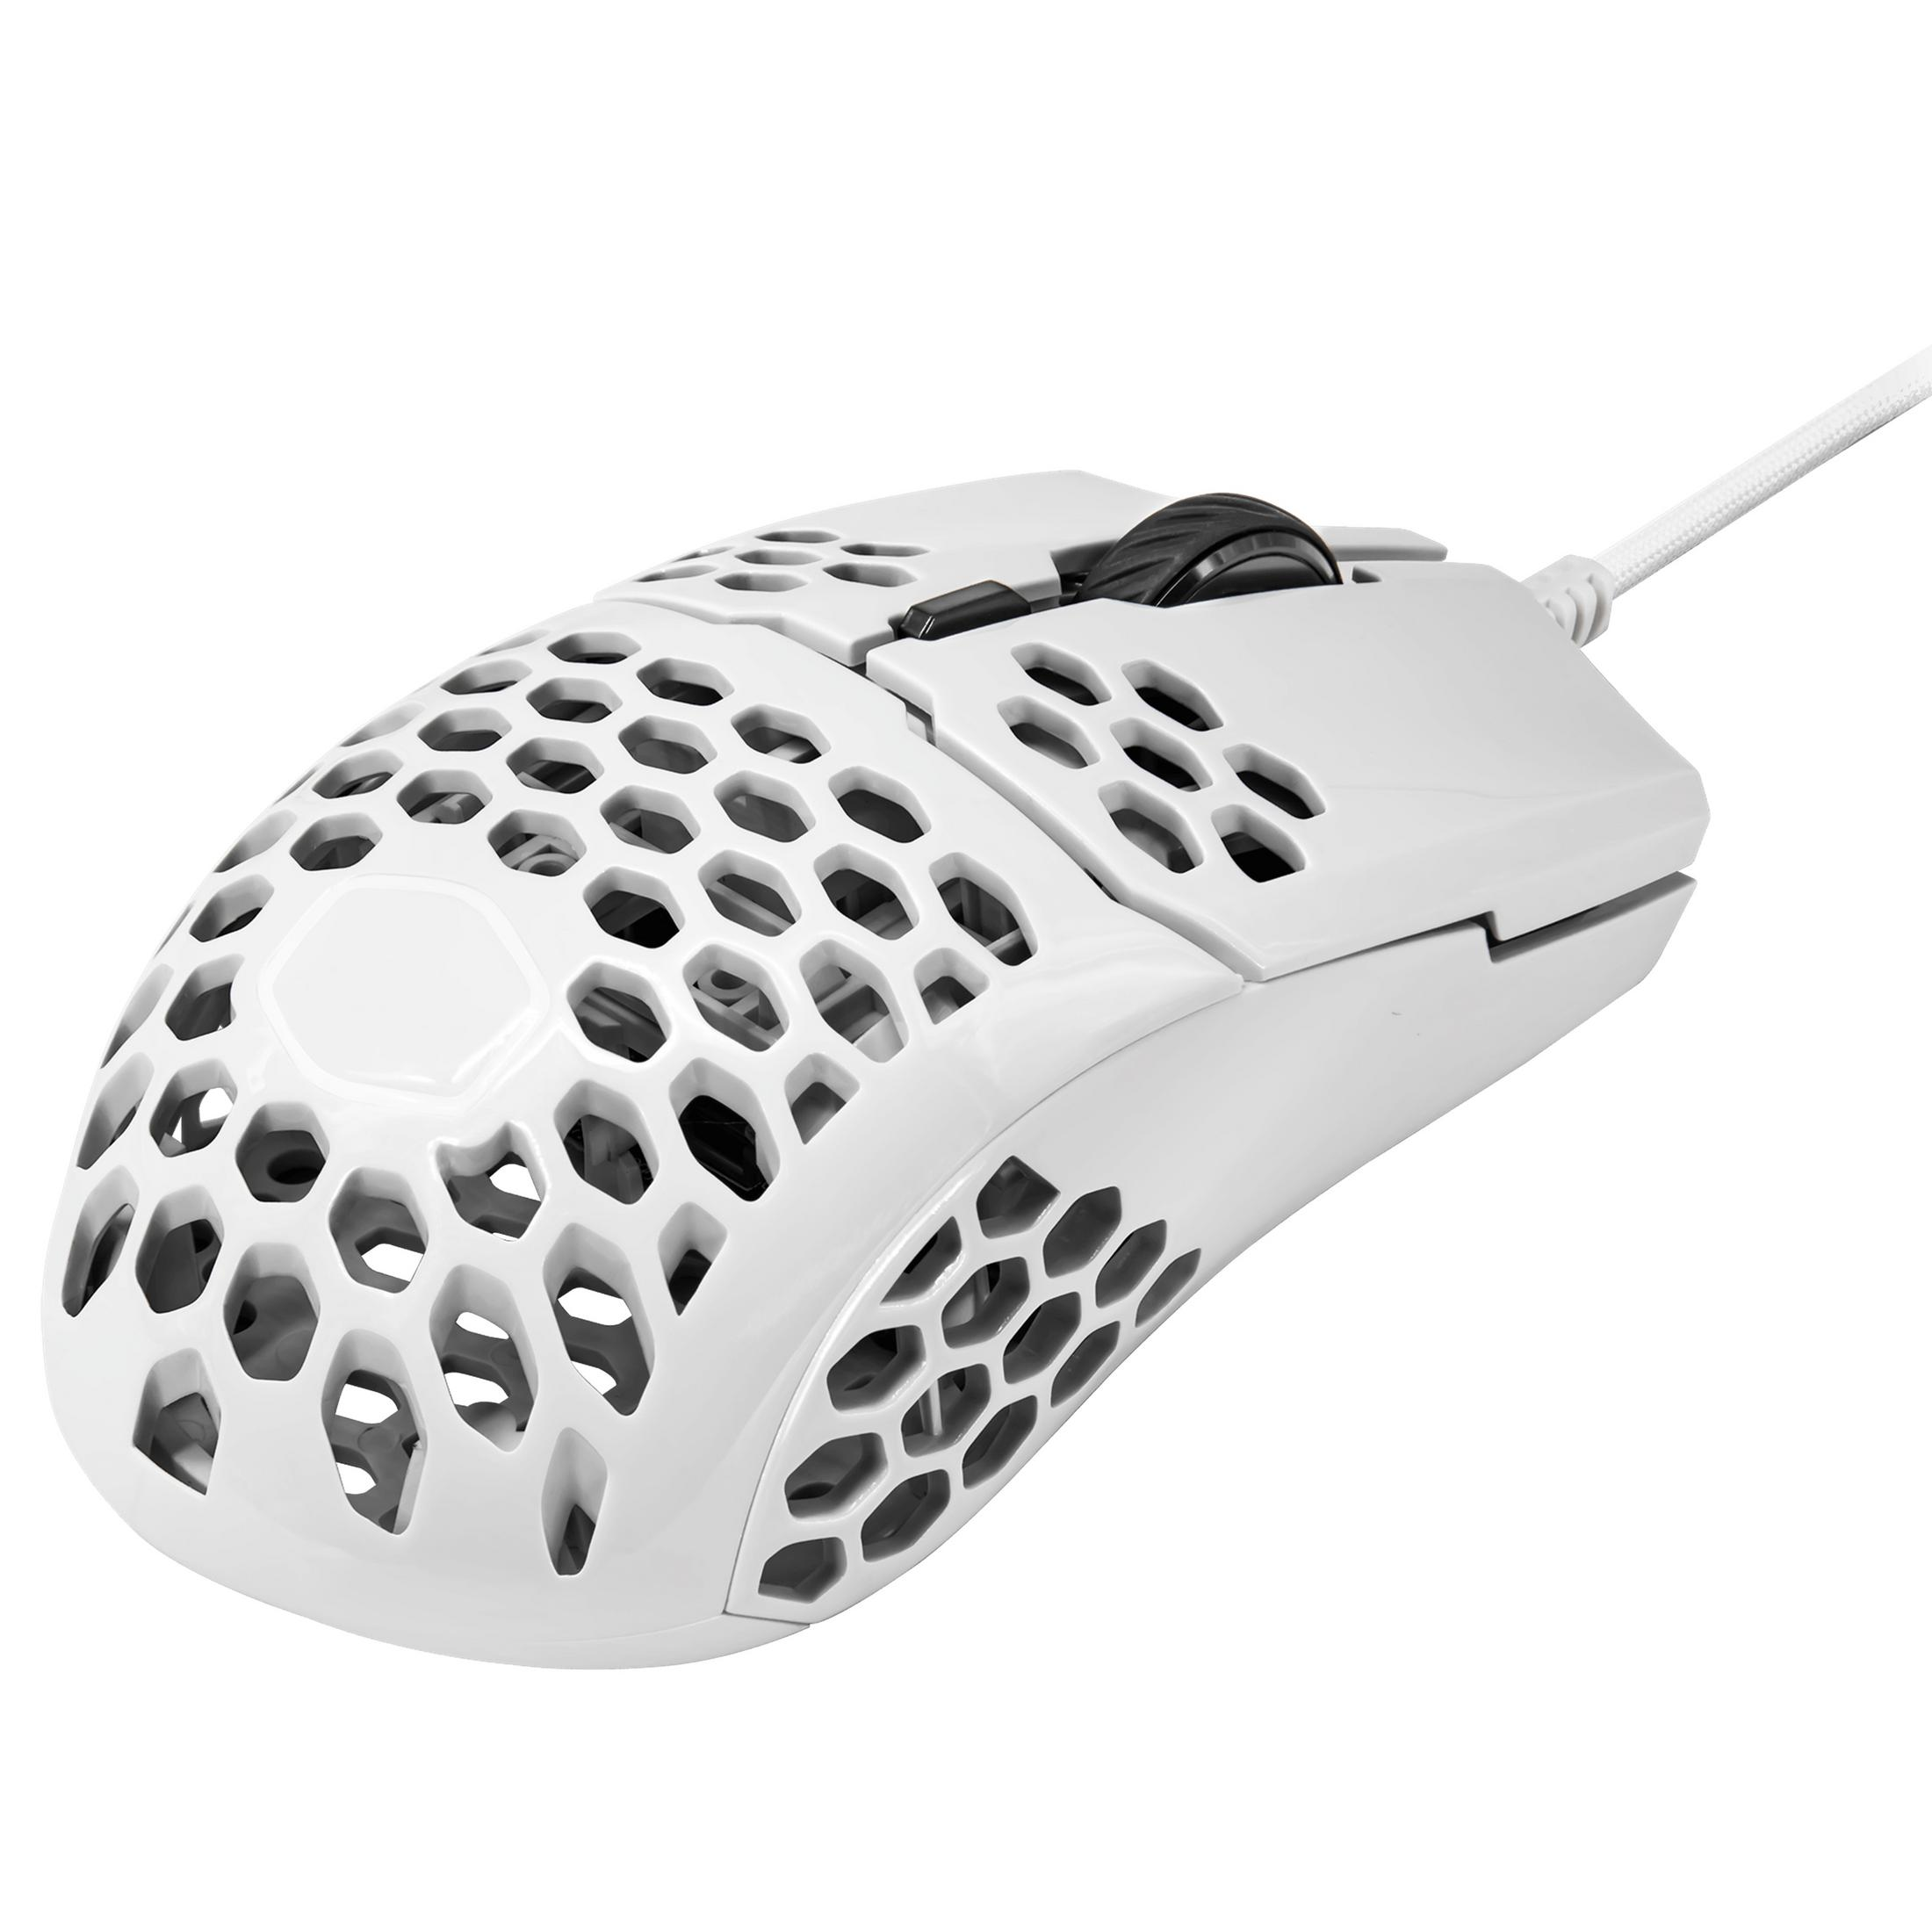 MASTER Weiß Gaming MM-710-WWOL1 Maus, COOLER Maus, WHITE